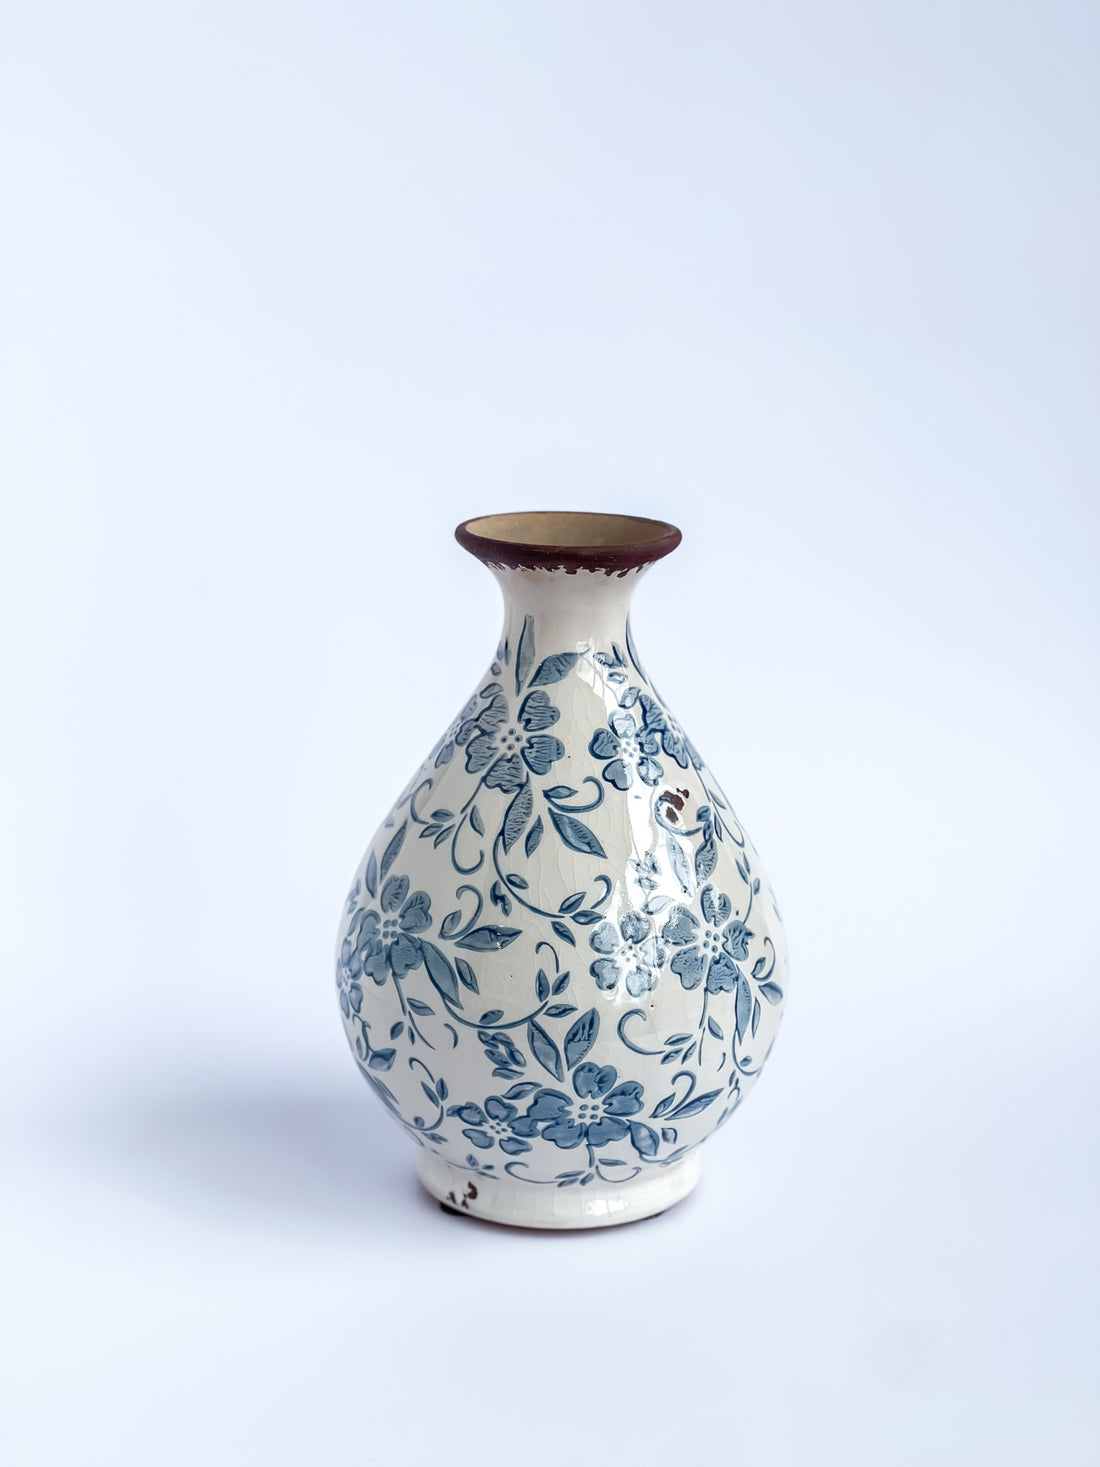 Medium Blue And White Ceramic Vase